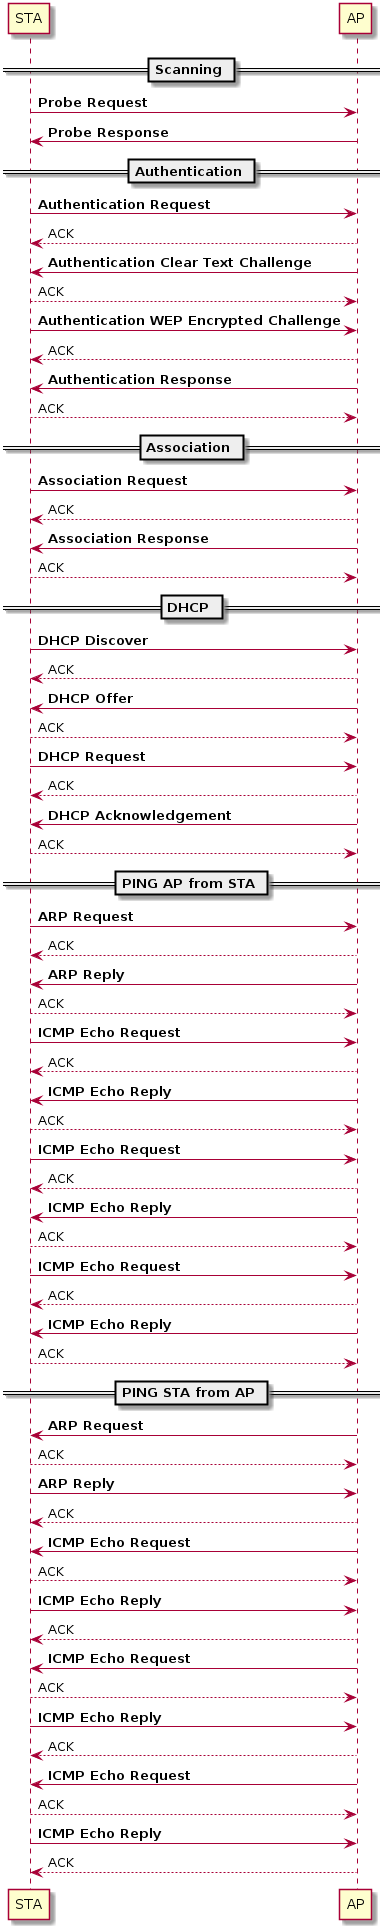      == Scanning ==

     STA -> AP: **Probe Request**
     AP -> STA: **Probe Response**

     == Authentication ==

     STA -> AP: **Authentication Request**
     AP --> STA: ACK
     AP -> STA: **Authentication Clear Text Challenge**
     STA --> AP: ACK
     STA -> AP: **Authentication WEP Encrypted Challenge**
     AP --> STA: ACK
     AP -> STA: **Authentication Response**
     STA --> AP: ACK

     == Association ==

     STA -> AP: **Association Request**
     AP --> STA: ACK
     AP -> STA: **Association Response**
     STA --> AP: ACK

     == DHCP ==

     STA -> AP: **DHCP Discover**
     AP --> STA: ACK
     AP -> STA: **DHCP Offer**
     STA --> AP: ACK
     STA -> AP: **DHCP Request**
     AP --> STA: ACK
     AP -> STA: **DHCP Acknowledgement**
     STA --> AP: ACK

     == PING AP from STA ==

     STA -> AP: **ARP Request**
     AP --> STA: ACK
     AP -> STA: **ARP Reply**
     STA --> AP: ACK
     STA -> AP: **ICMP Echo Request**
     AP --> STA: ACK
     AP -> STA: **ICMP Echo Reply**
     STA --> AP: ACK
     STA -> AP: **ICMP Echo Request**
     AP --> STA: ACK
     AP -> STA: **ICMP Echo Reply**
     STA --> AP: ACK
     STA -> AP: **ICMP Echo Request**
     AP --> STA: ACK
     AP -> STA: **ICMP Echo Reply**
     STA --> AP: ACK

     == PING STA from AP ==

     AP -> STA: **ARP Request**
     STA --> AP: ACK
     STA -> AP: **ARP Reply**
     AP --> STA: ACK
     AP -> STA: **ICMP Echo Request**
     STA --> AP: ACK
     STA -> AP: **ICMP Echo Reply**
     AP --> STA: ACK
     AP -> STA: **ICMP Echo Request**
     STA --> AP: ACK
     STA -> AP: **ICMP Echo Reply**
     AP --> STA: ACK
     AP -> STA: **ICMP Echo Request**
     STA --> AP: ACK
     STA -> AP: **ICMP Echo Reply**
     AP --> STA: ACK